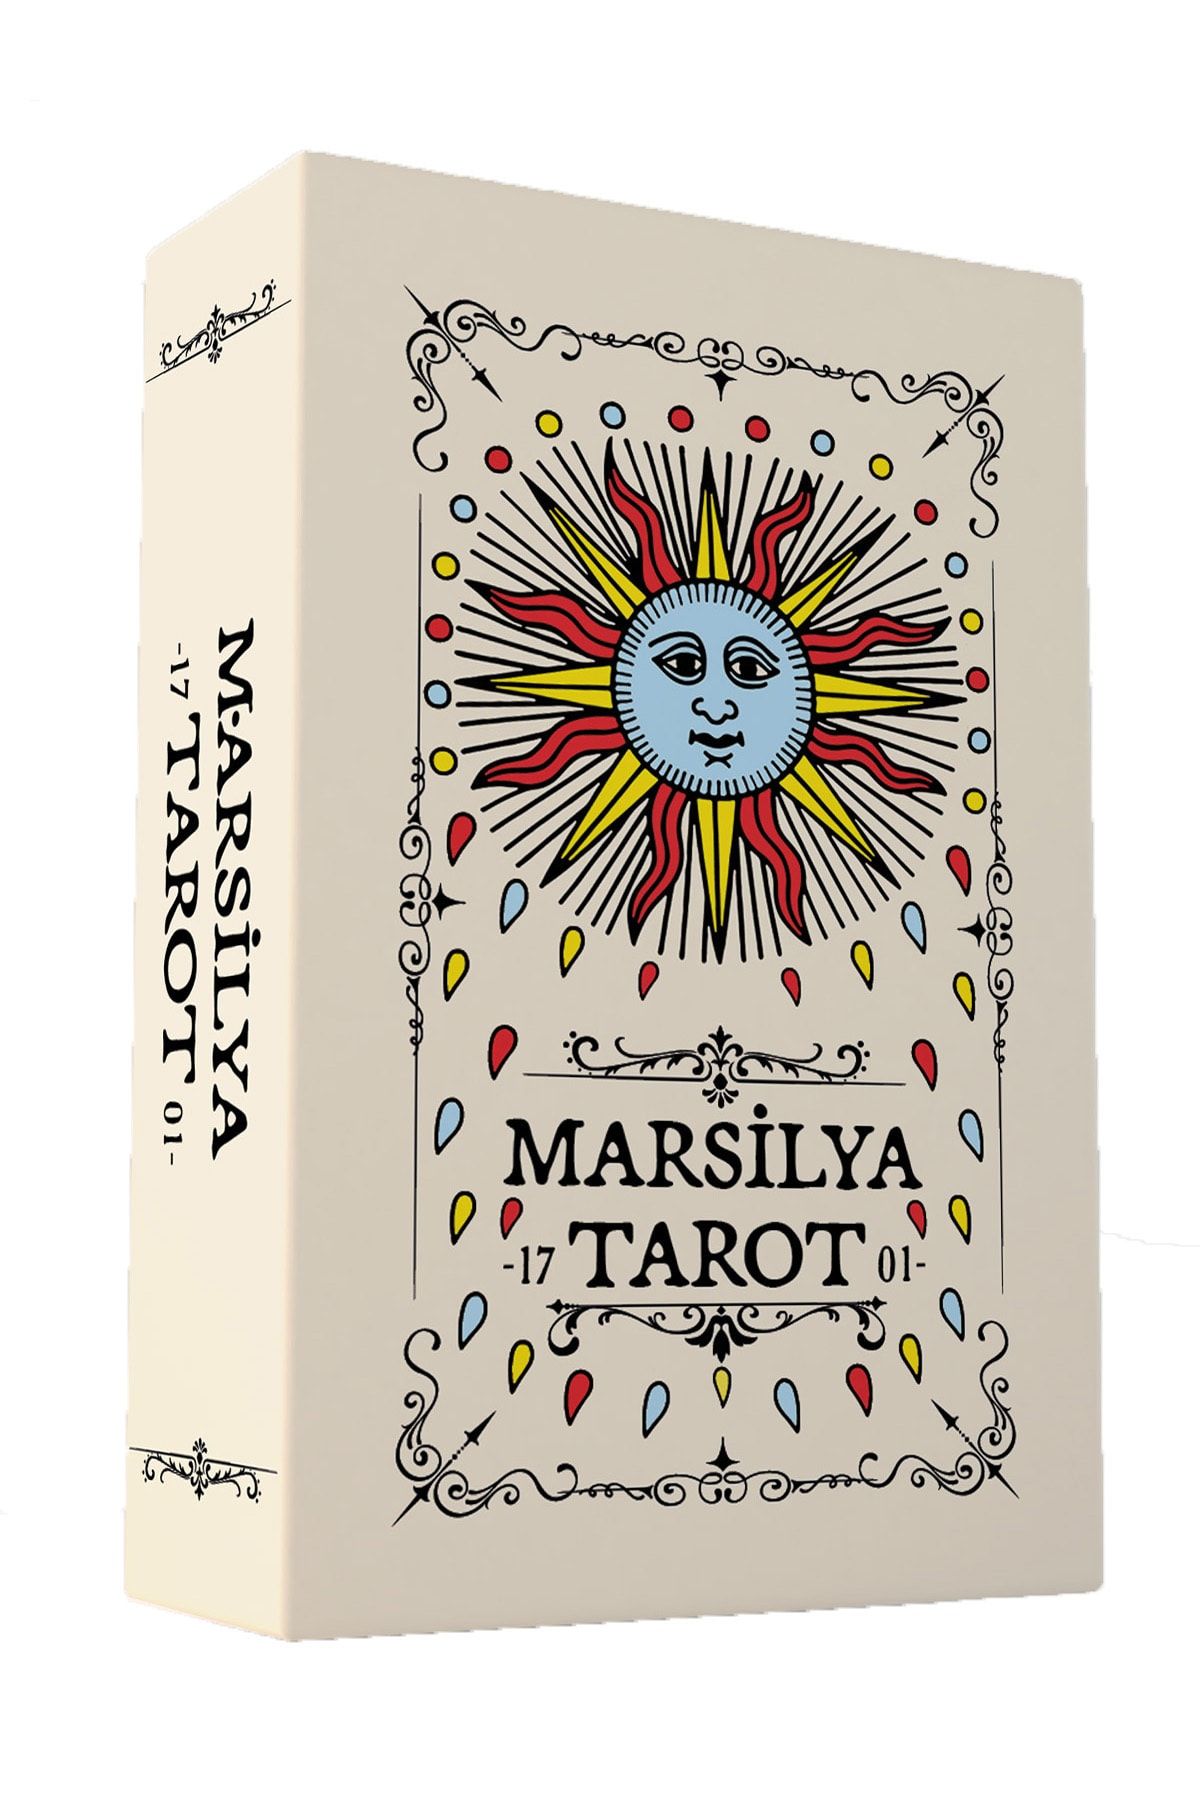 Ekorp Kitap Mini Marsilya Tarot 1701 - 78 Kartlık Deste Ve Rehber Kitapçık 2022 - 5,6x8,7cm Cep Boy